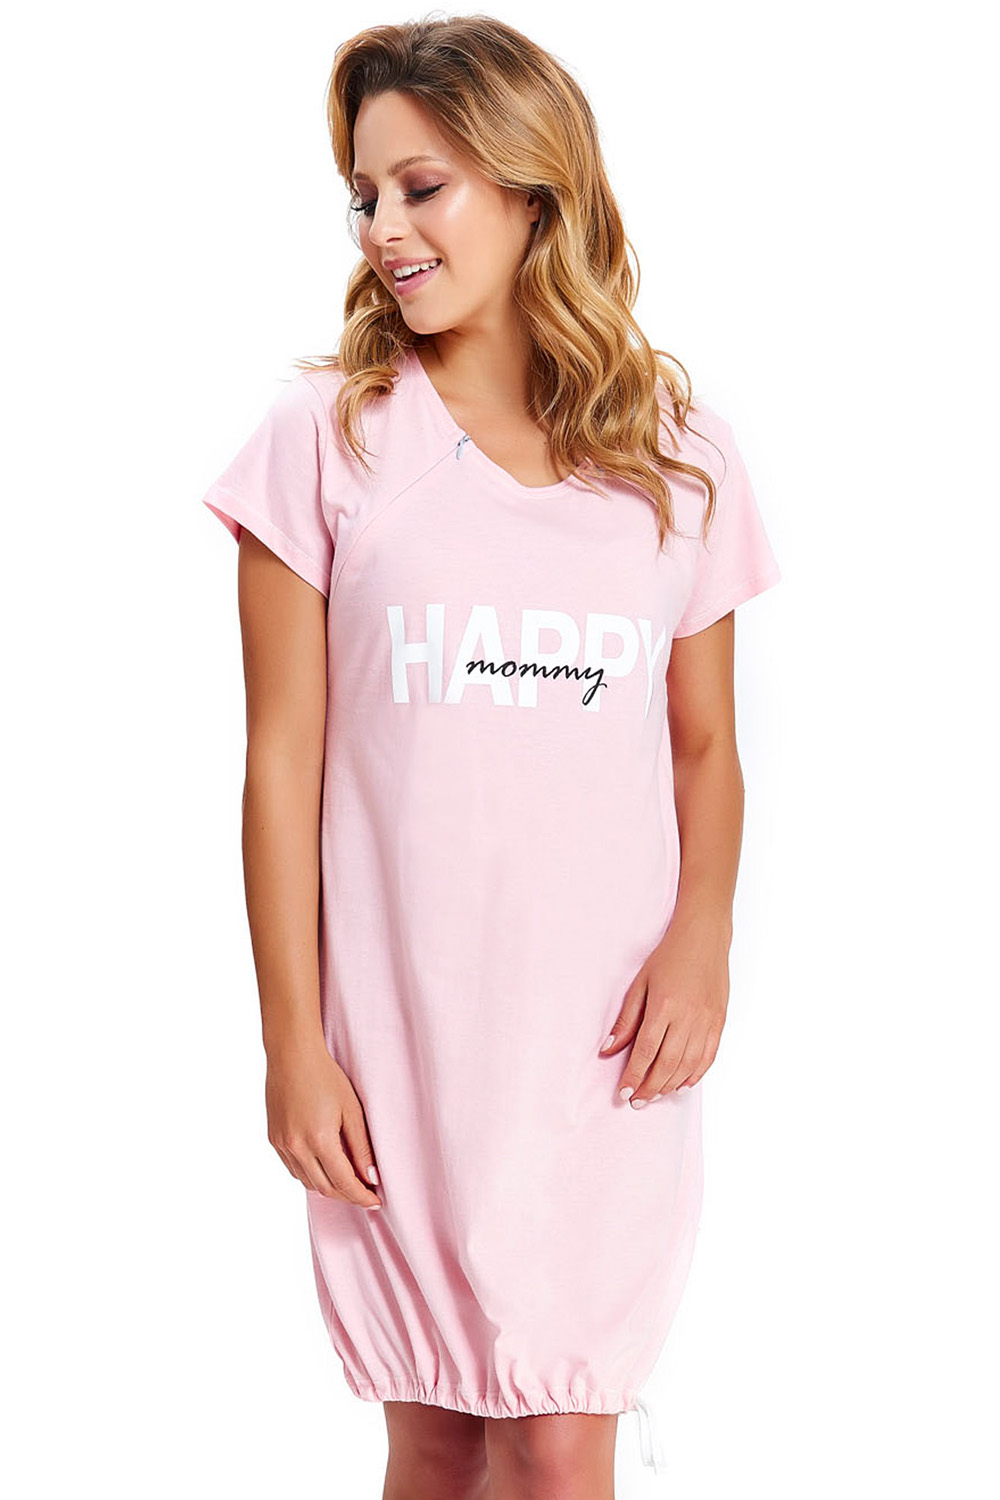 Dn-nightwear TCB.9504 Nocna koszula, sweet pink